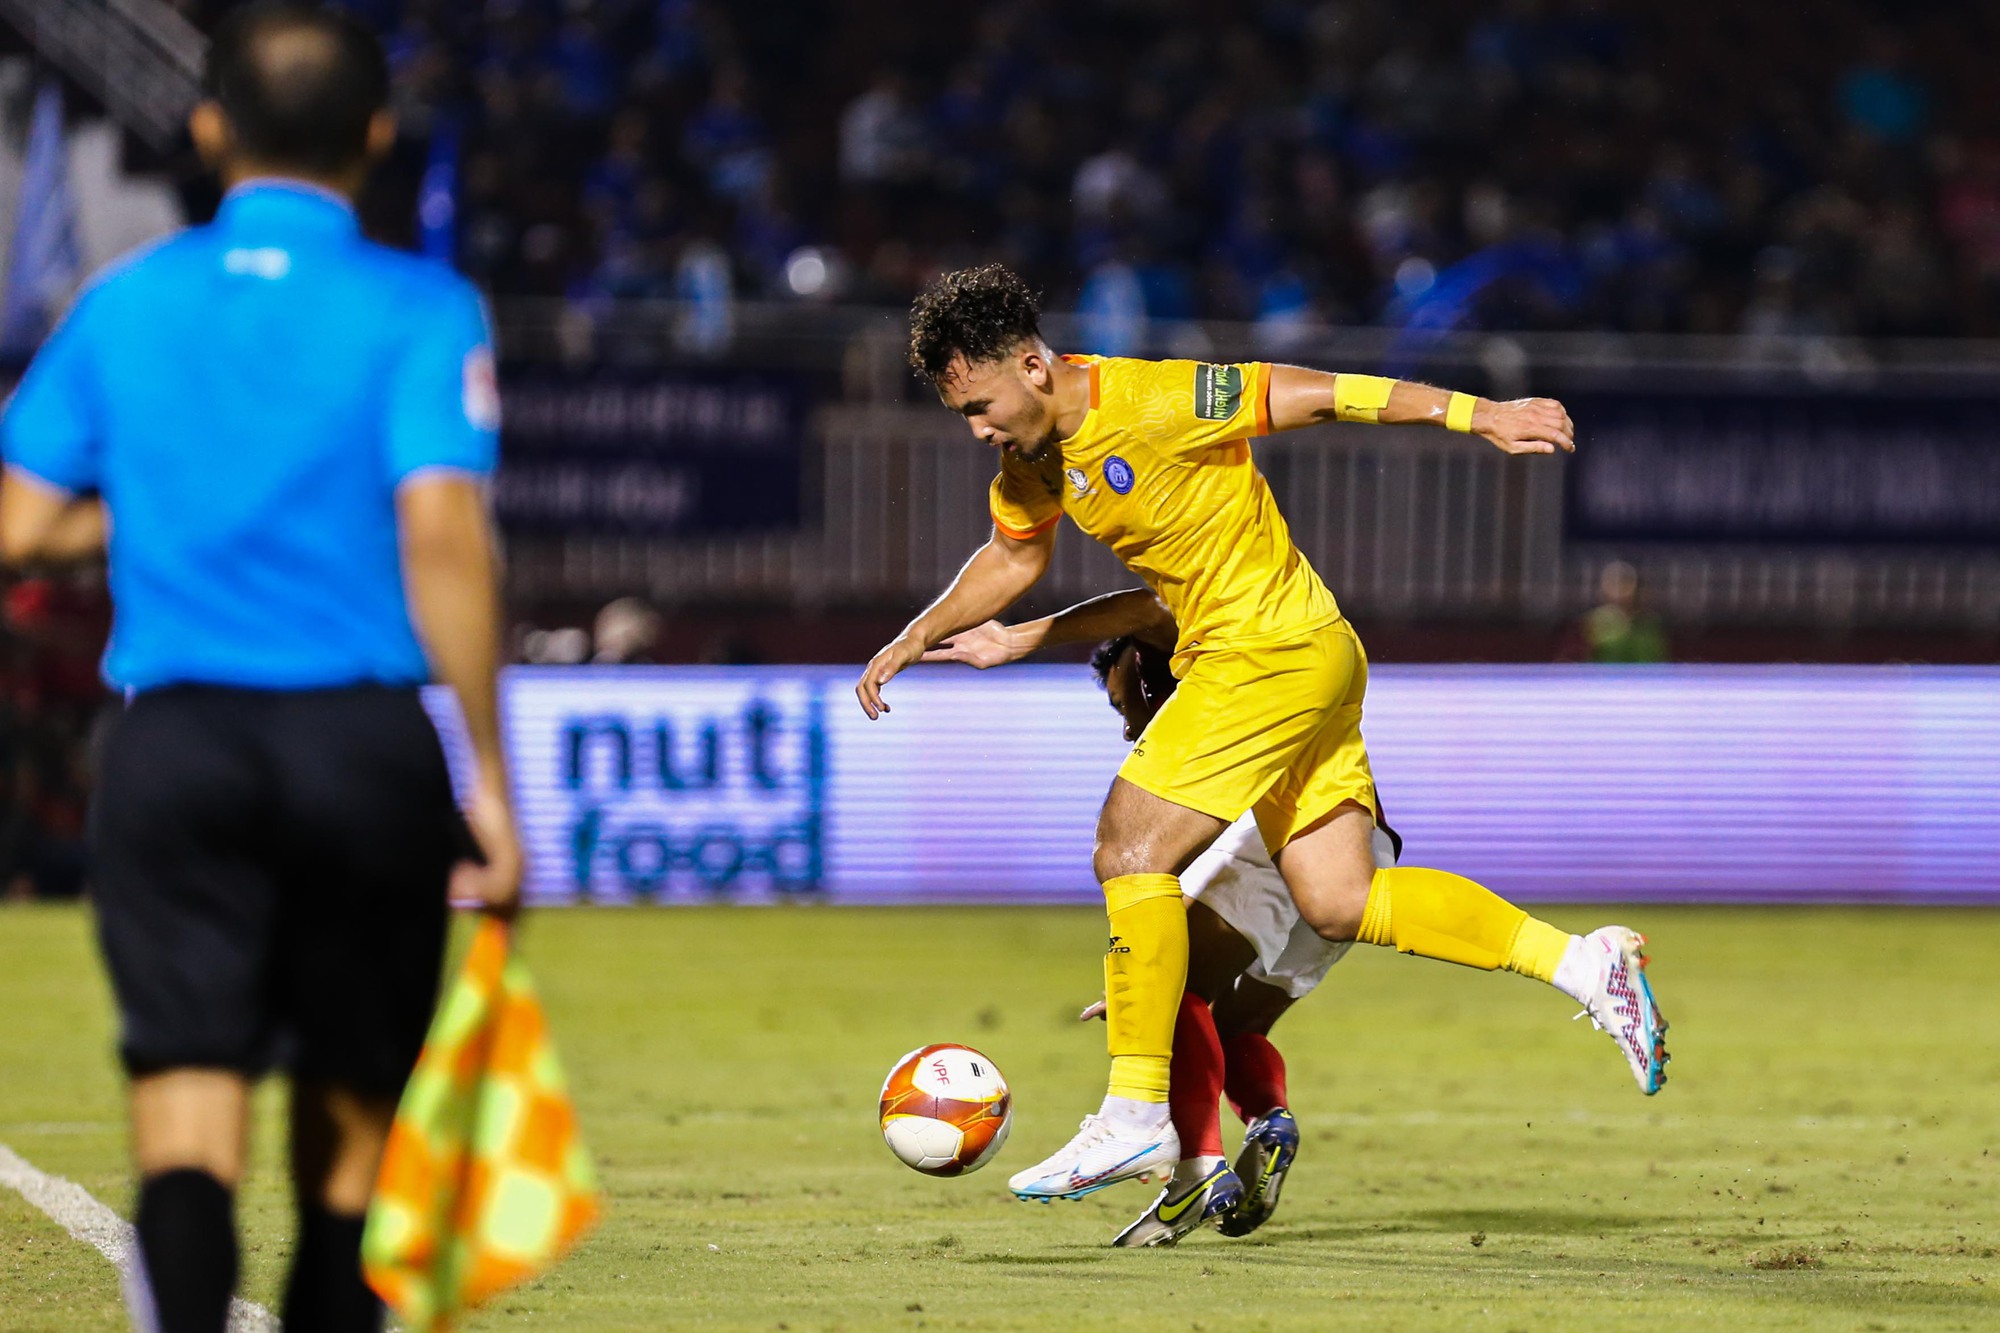 Cầu thủ việt kiều Pháp toả sáng giúp Khánh Hoà thoát vị trí cuối bảng - Ảnh 3.